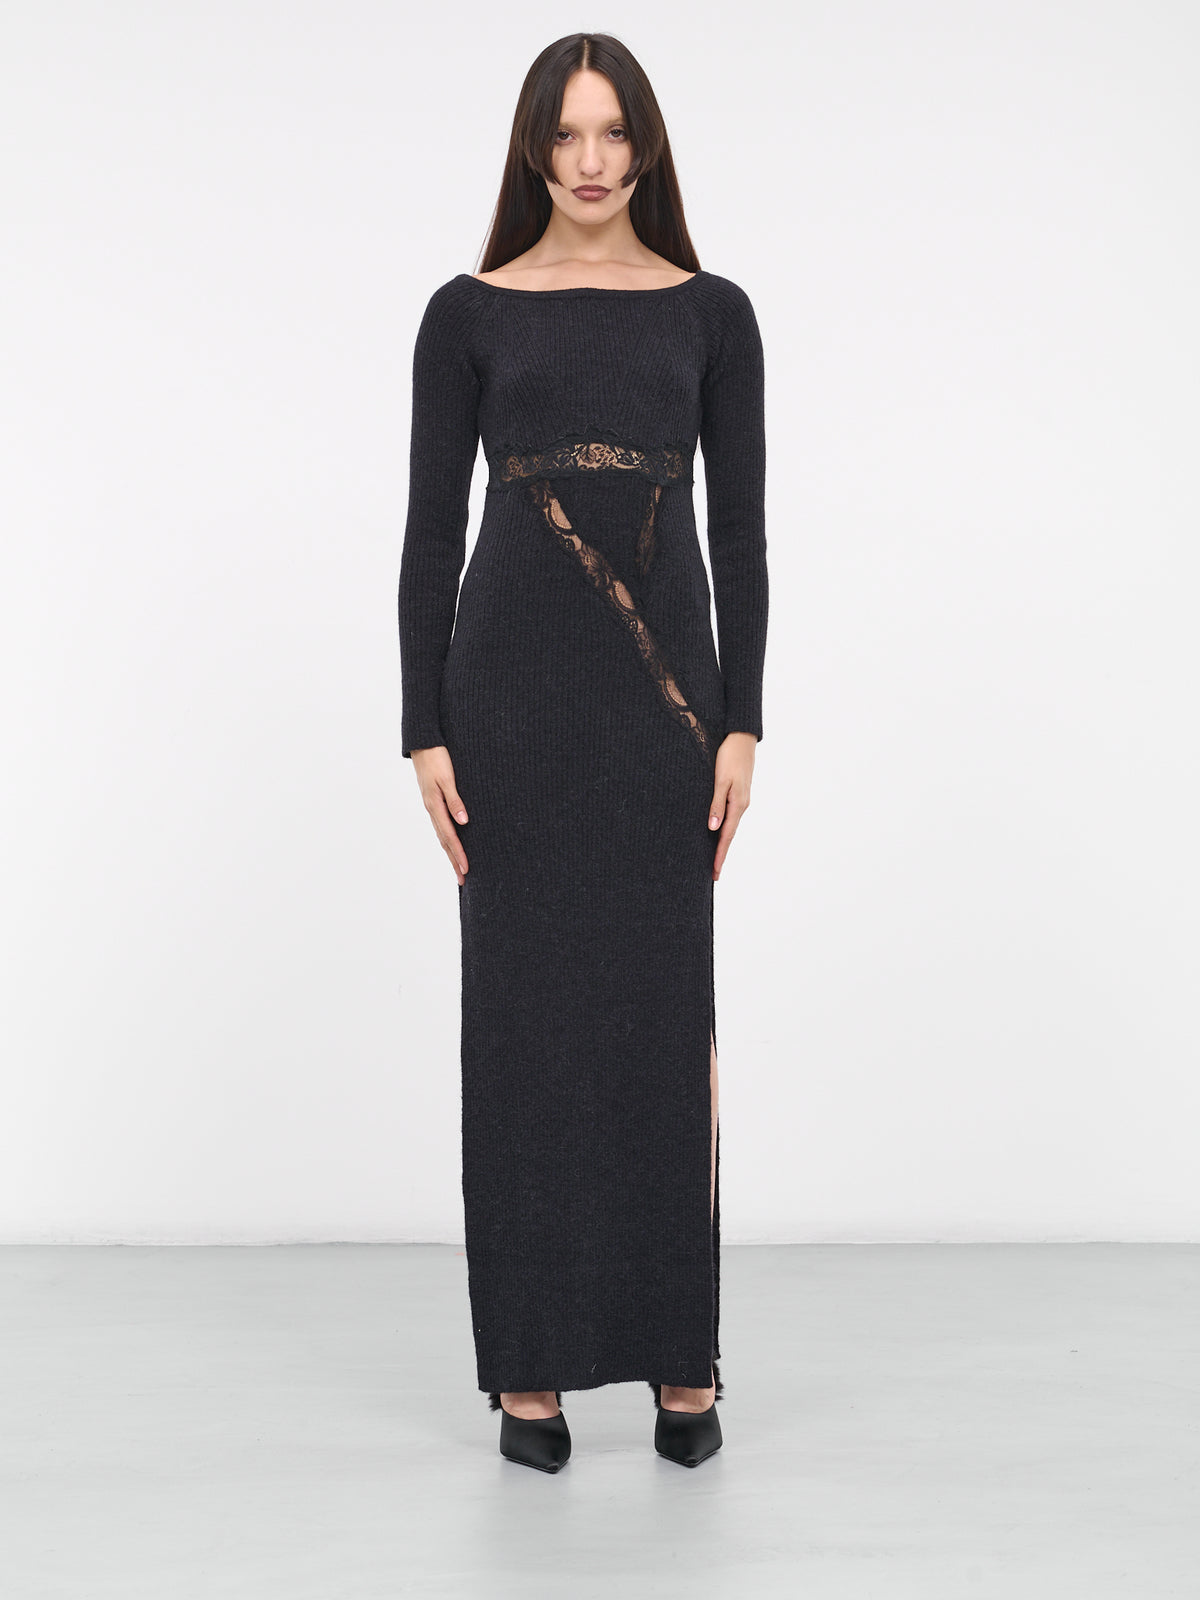 Lace Rib-Knit Dress (KN008-BLACK)